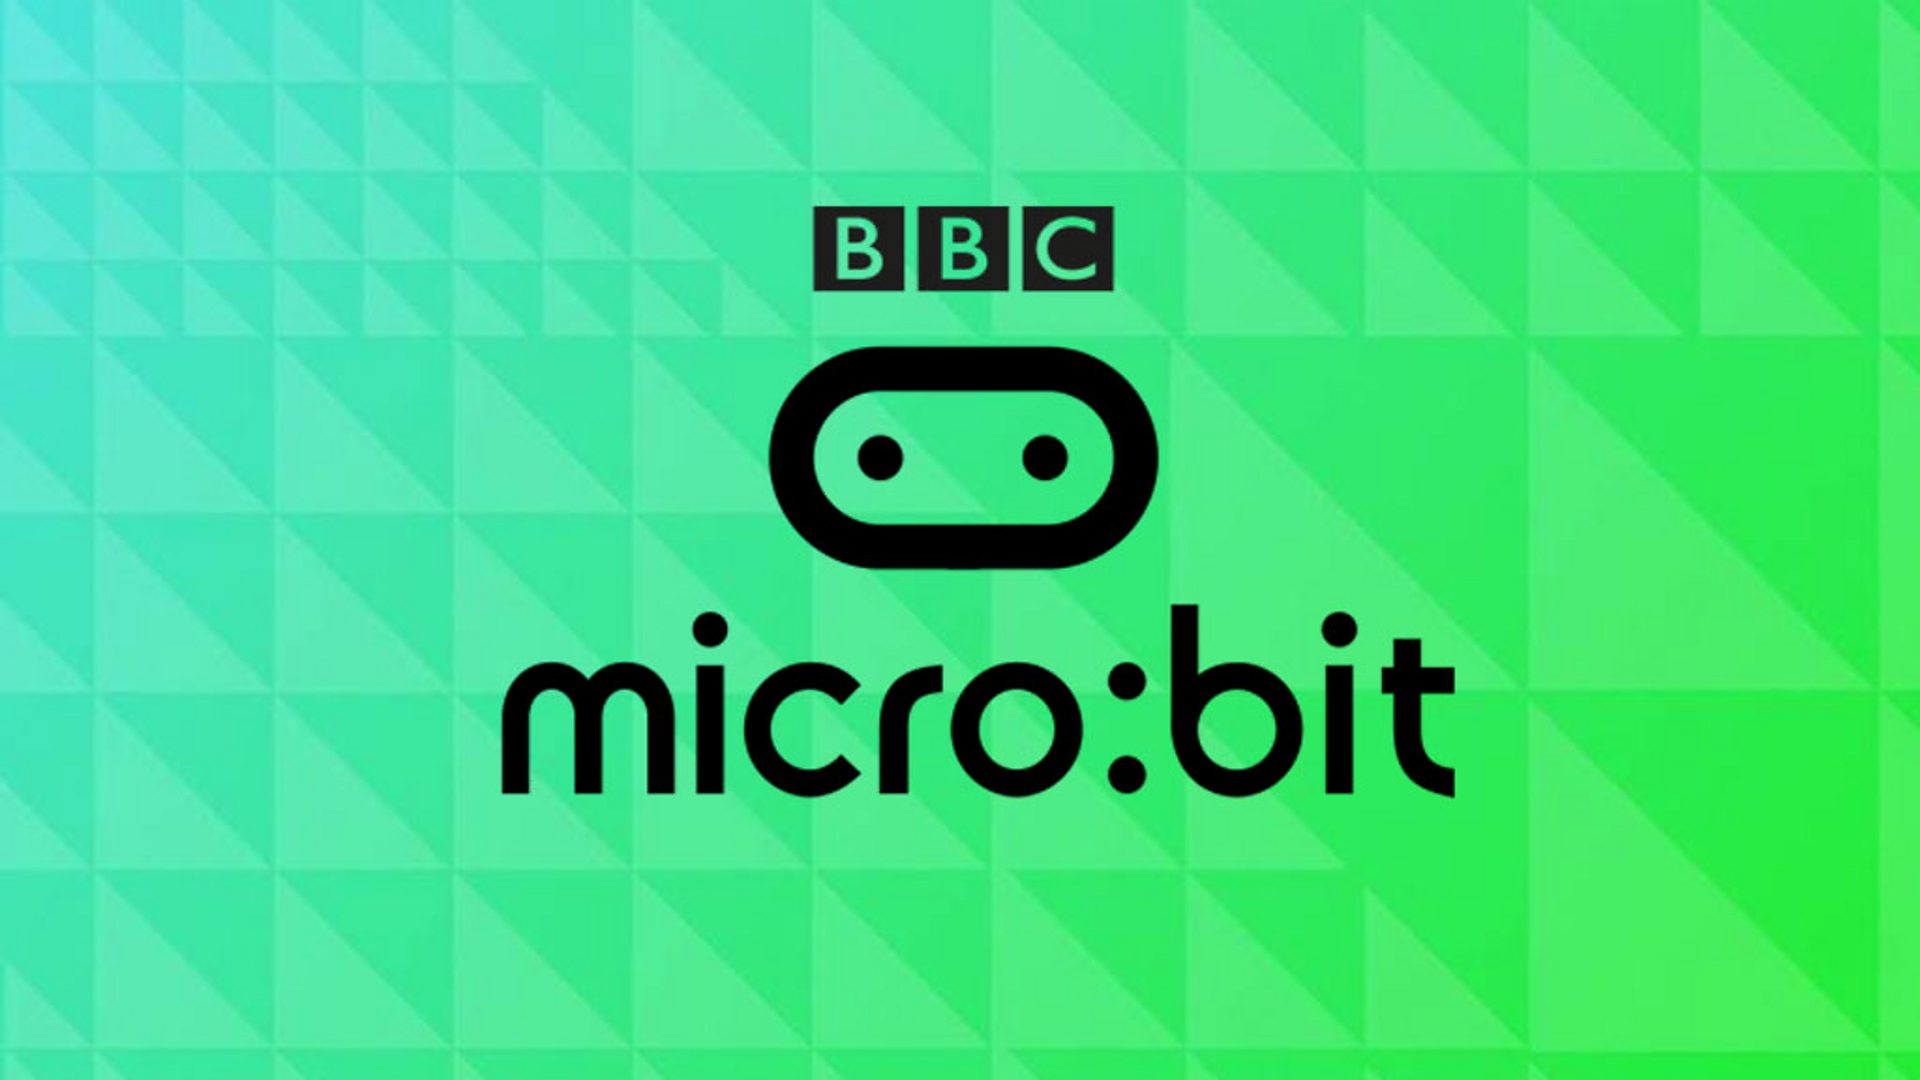 BBC - BBC micro:bit